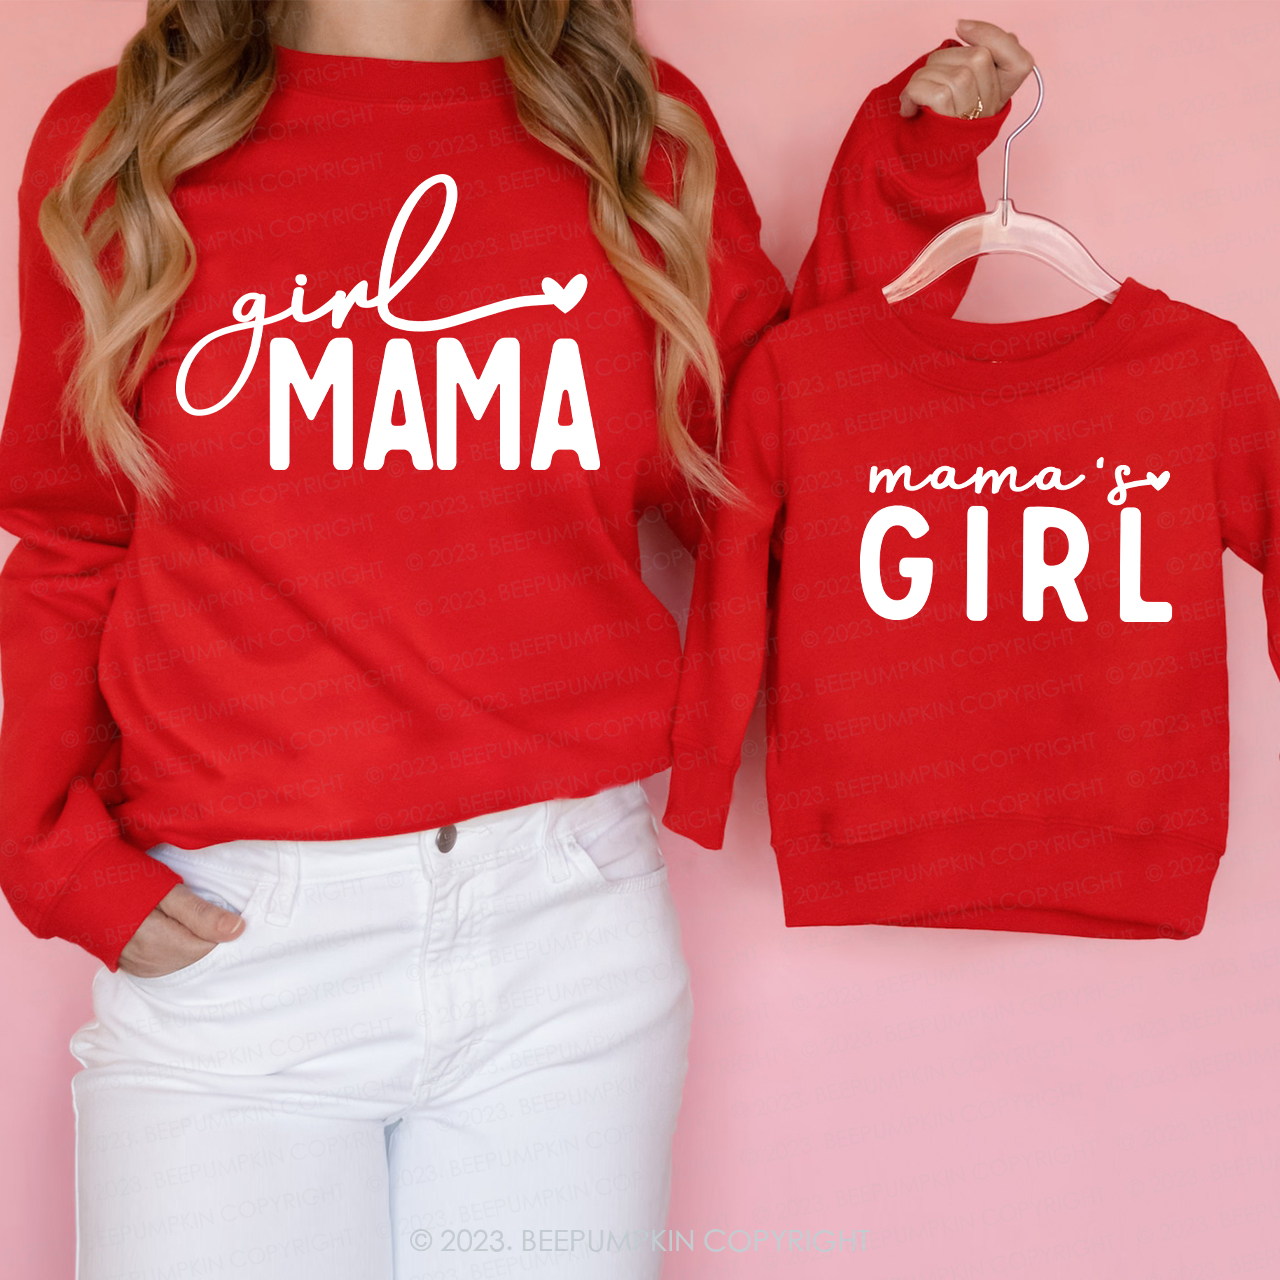 Girl Mama and Mama's Girl Matching Valentine's Day Gift Sweatshirts